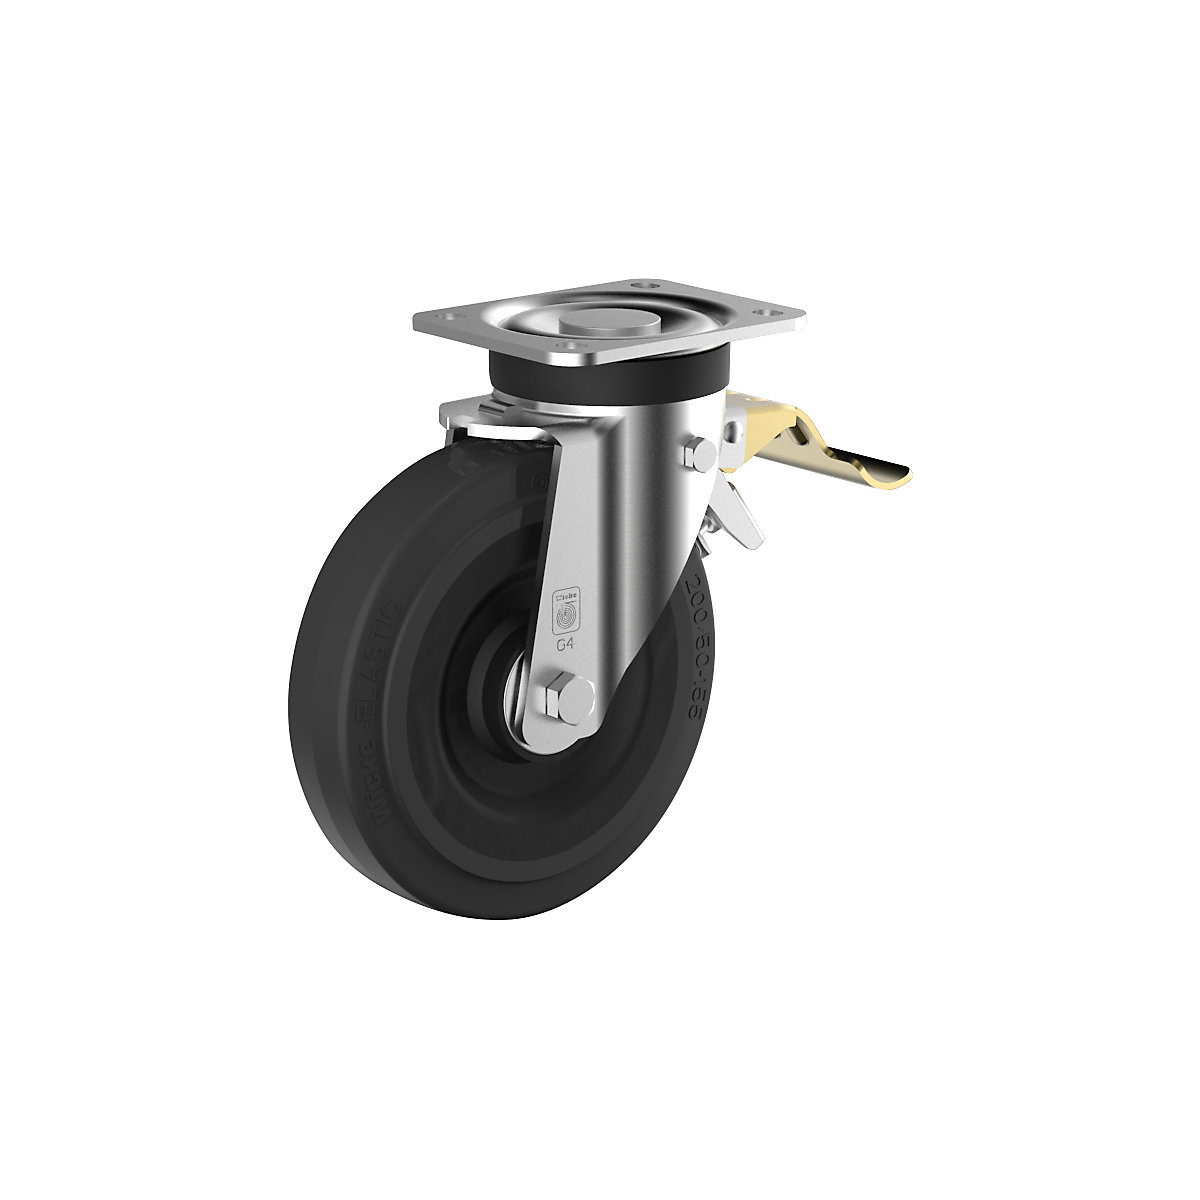 Elastické celogumové koleso na oceľovom ráfiku – Wicke, Ø x šírka kolesa 250 x 60 mm, otočné koliesko s dvojitou brzdou-2